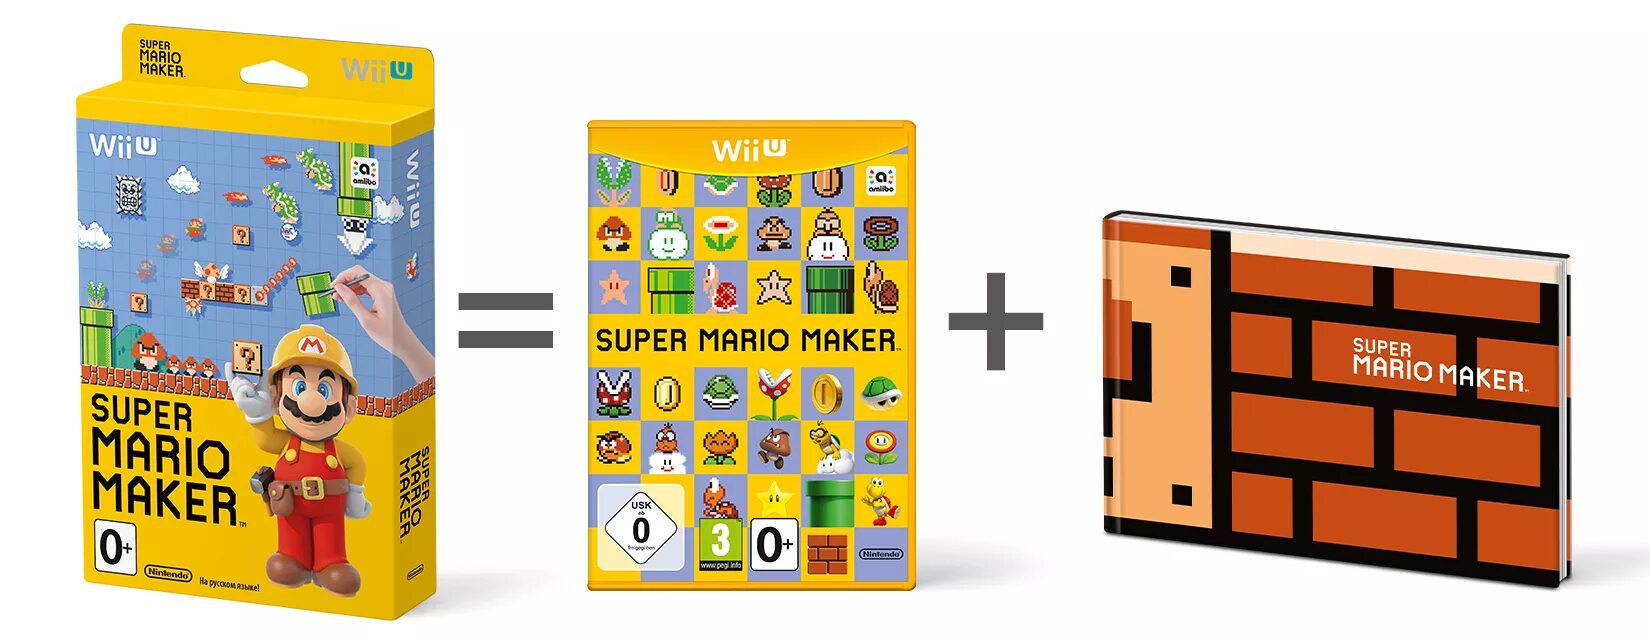 Super Mario maker Wii u. Super Mario maker 1. Super Mario maker Nintendo 3ds. Super Mario maker 1 for Wii u. Mario maker wii